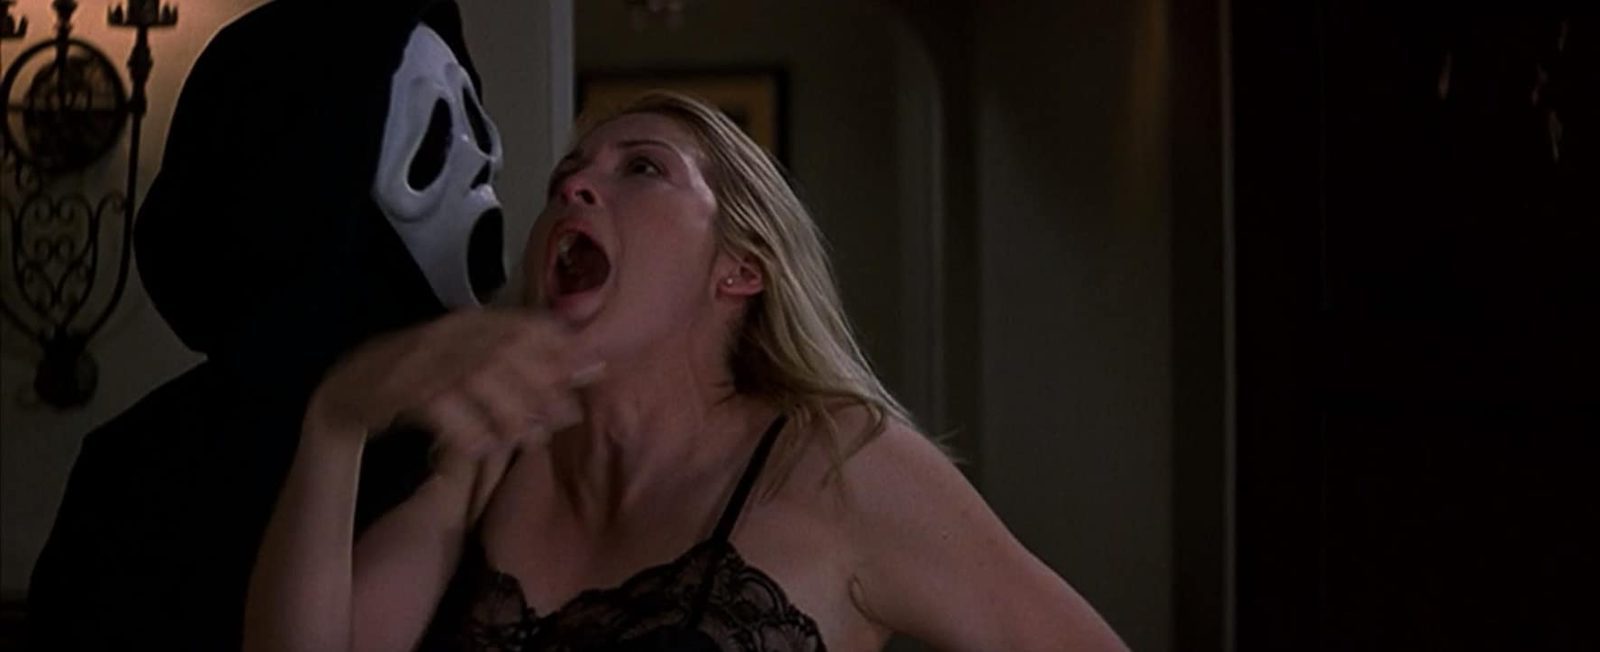 دانلود فیلم Scream 3 2000